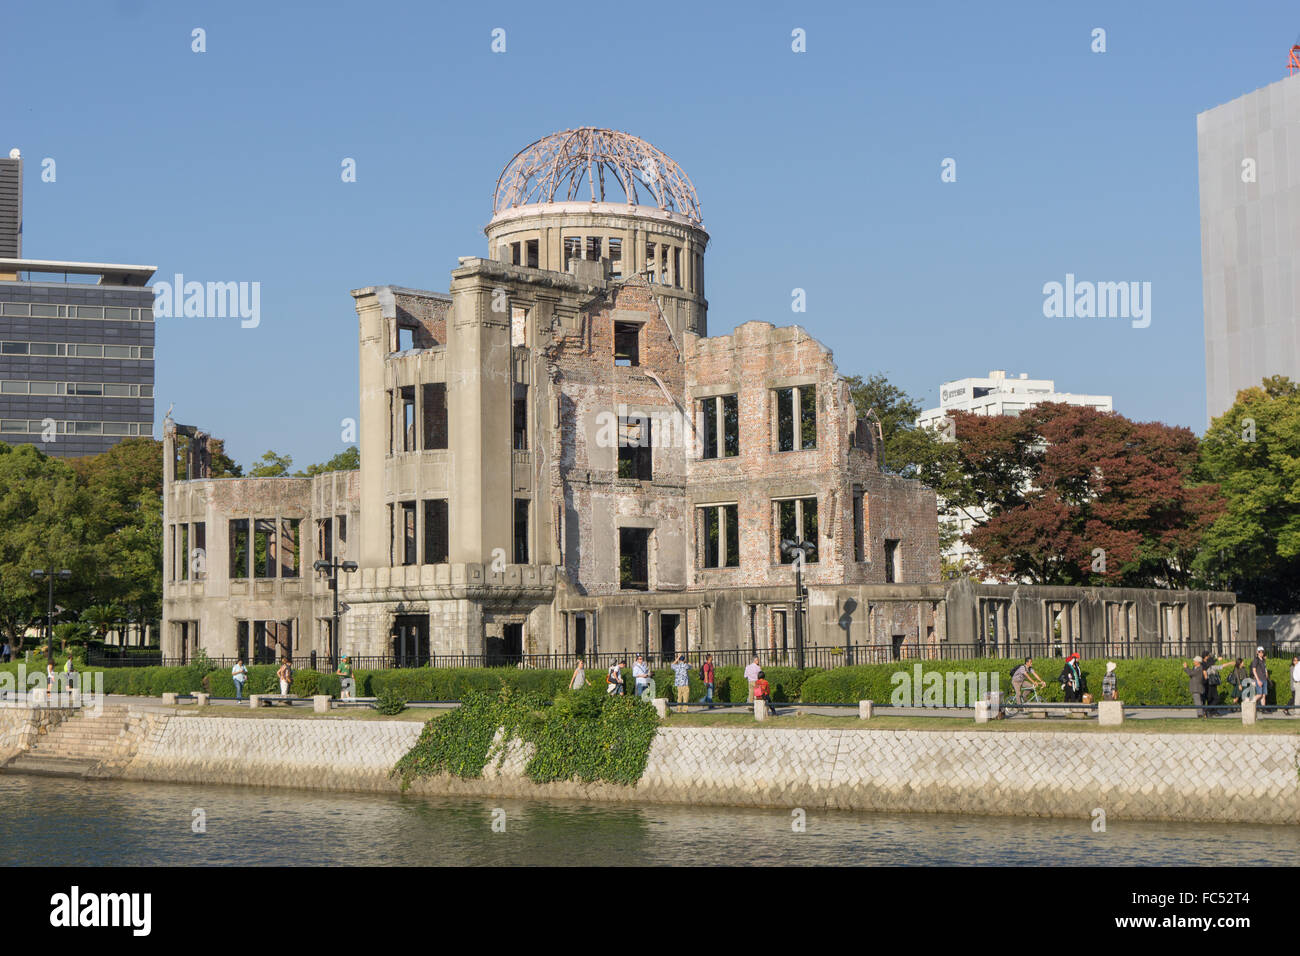 La Cupola della Bomba Atomica Hiroshima Foto Stock